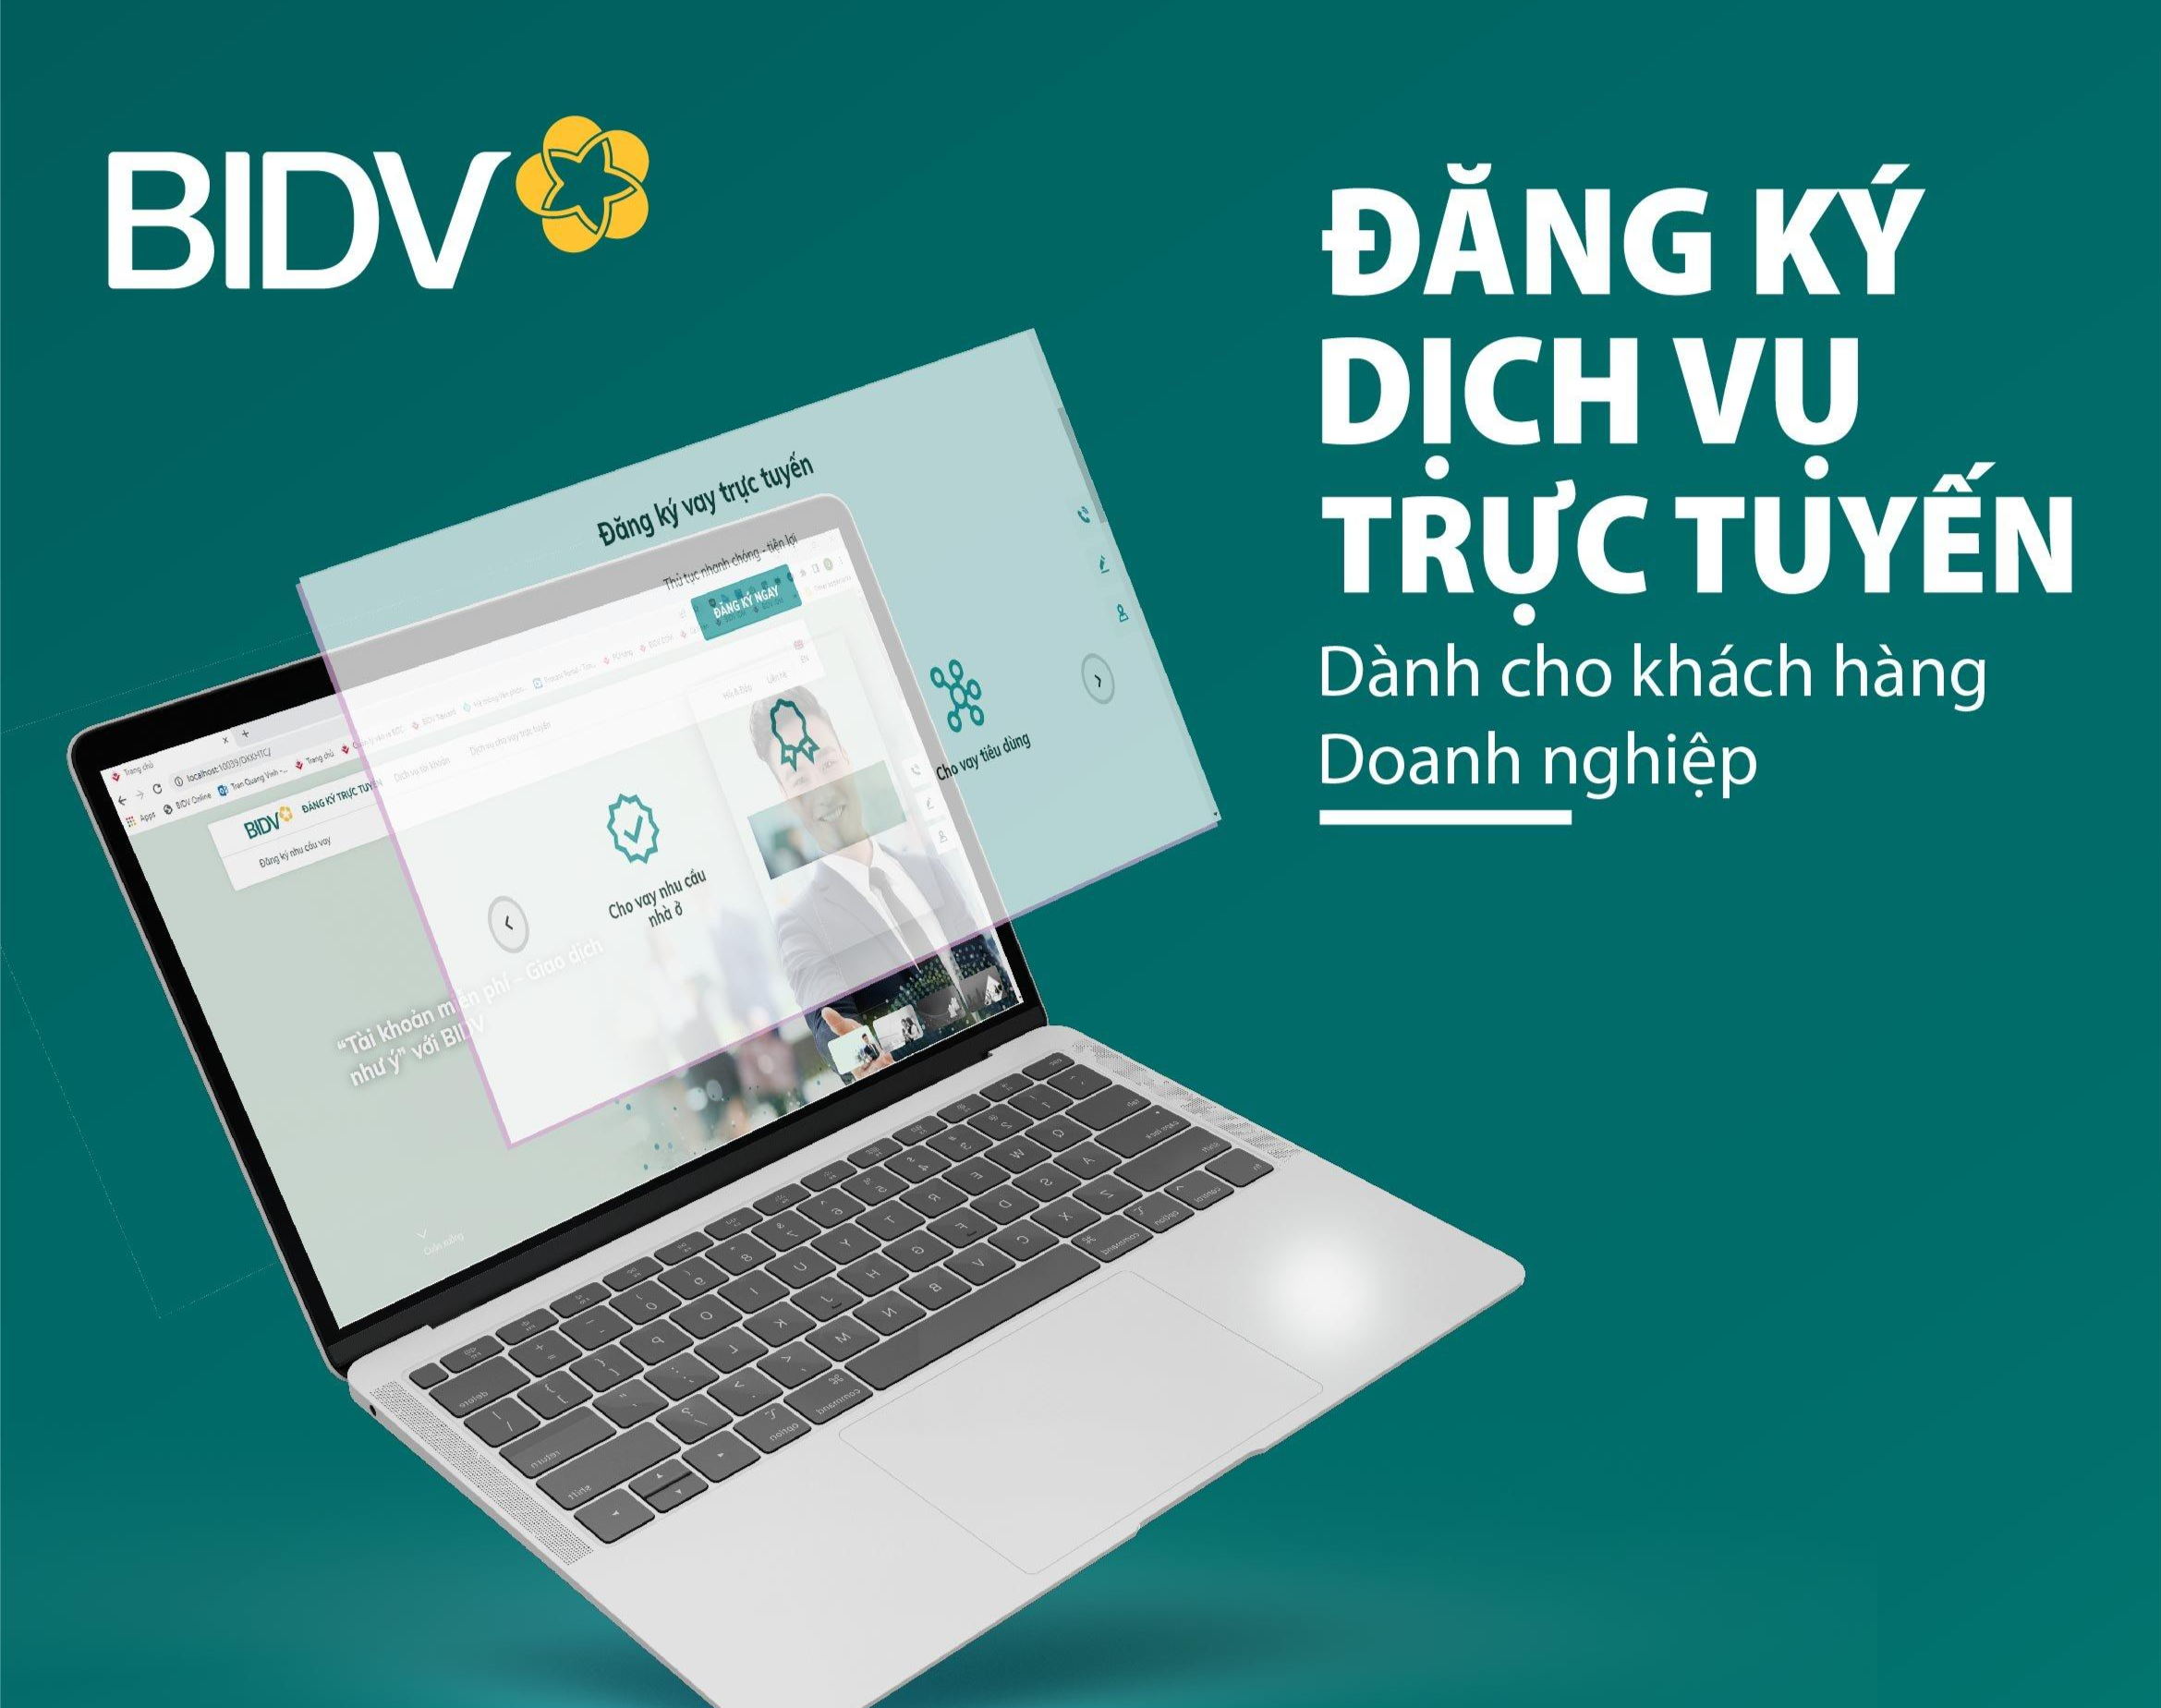 Hiểu đơn giản BIDV iBank là một ngân hàng điện tử do BIDV phát hành và quản lý